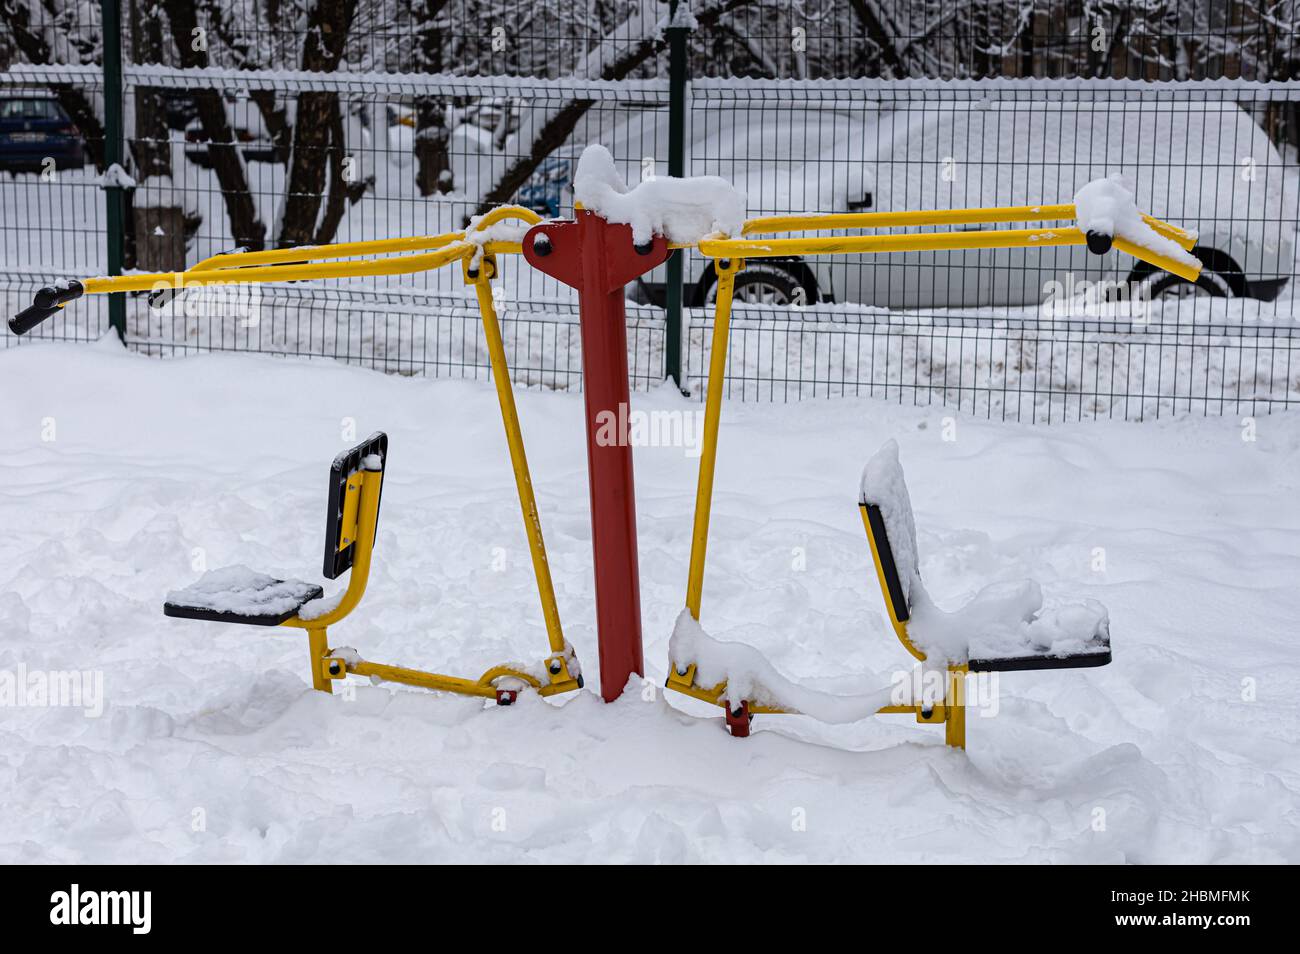 entraîneur sportif sur un terrain de jeu de la ville en hiver après une chute de neige.Photo de haute qualité Banque D'Images